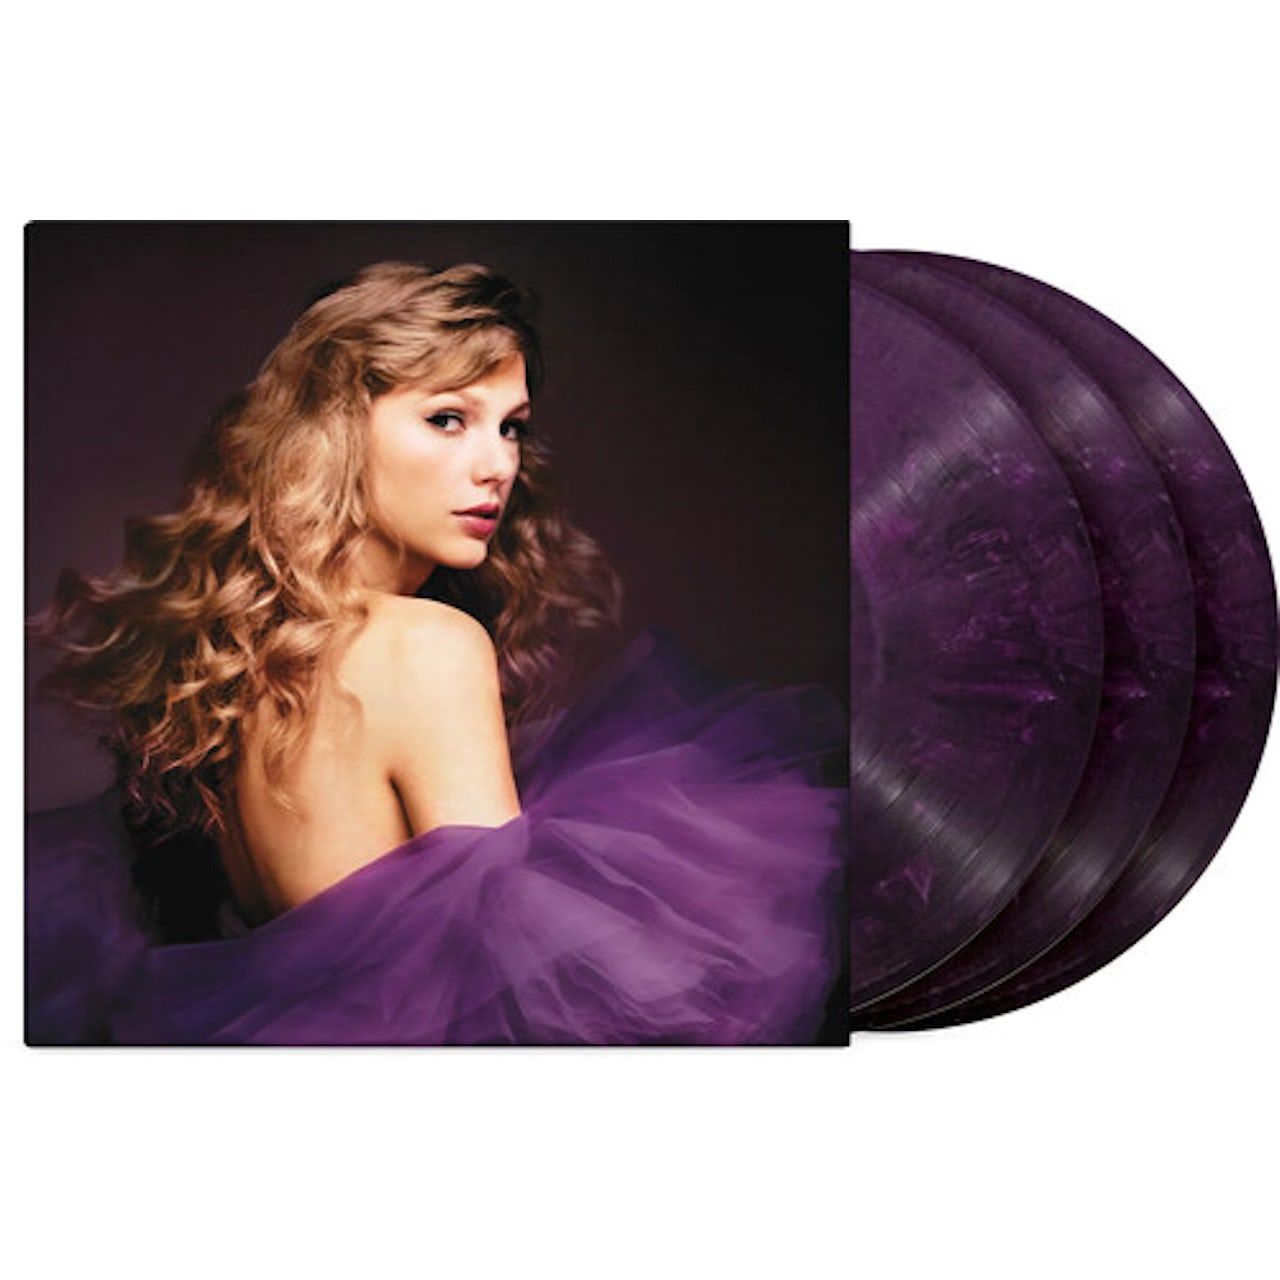 0602448438065, Виниловая пластинка Swift, Taylor, Speak Now (Taylor's Version) (coloured) виниловая пластинка swift taylor evermore coloured vinyl 2lp